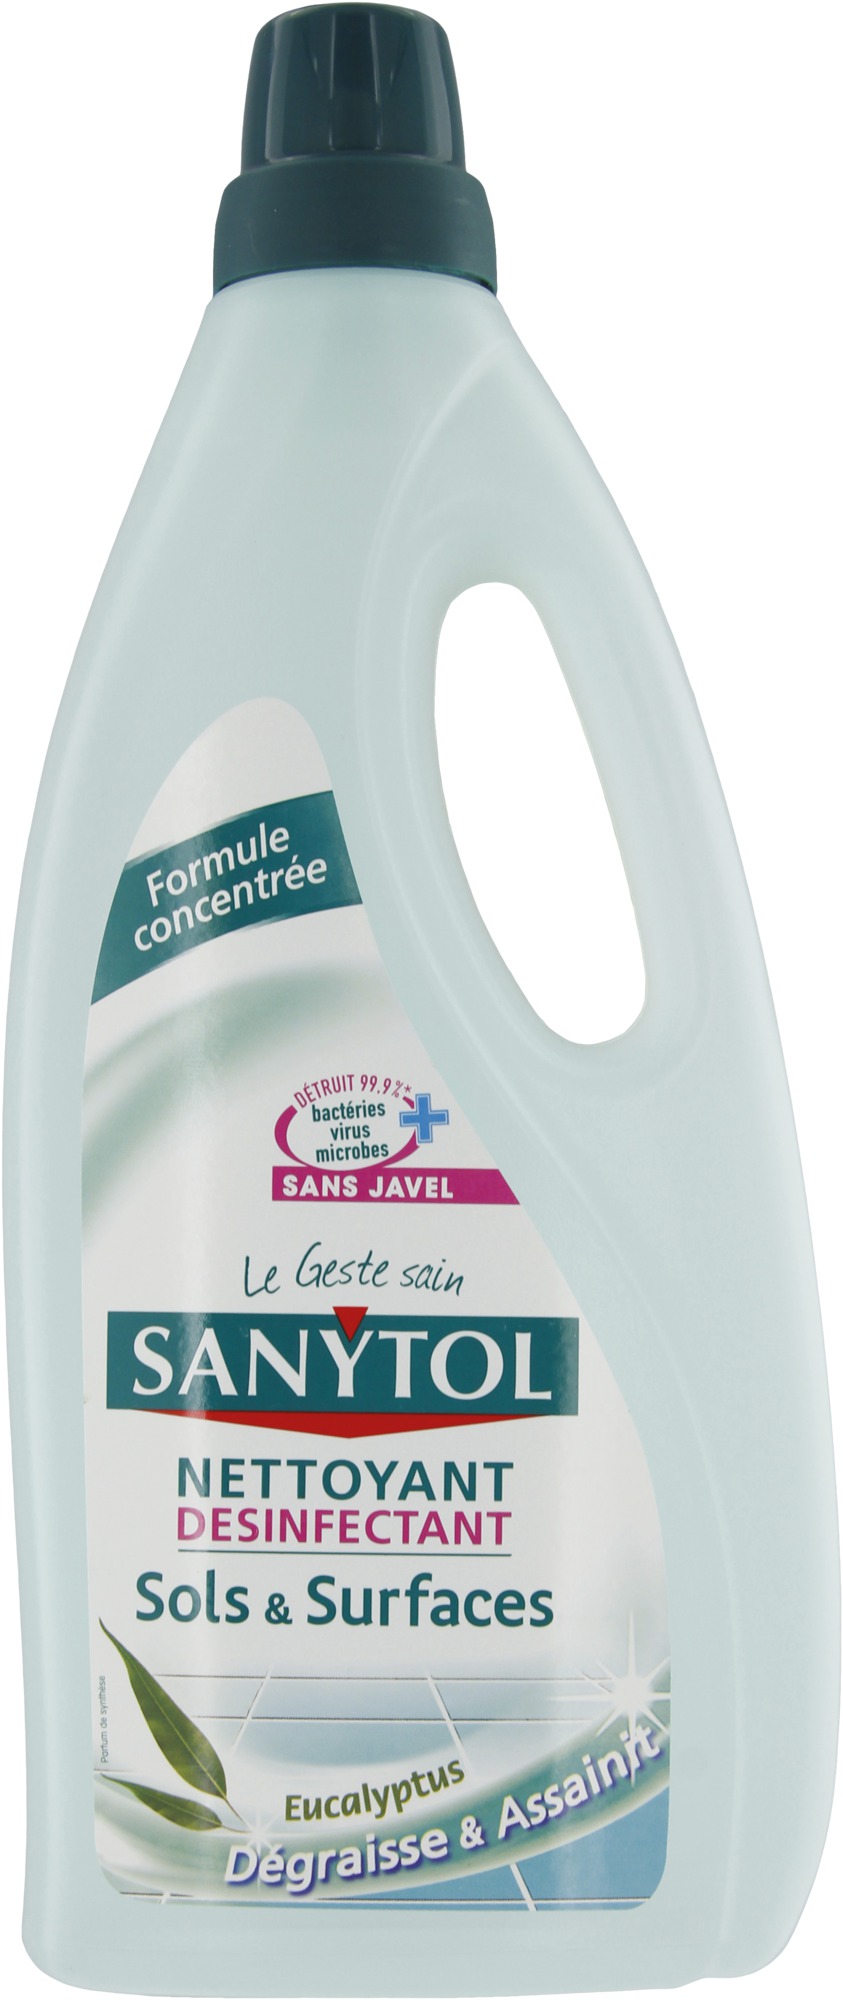 Nettoyant sols et surfaces Sanytol - Flancon 1 l